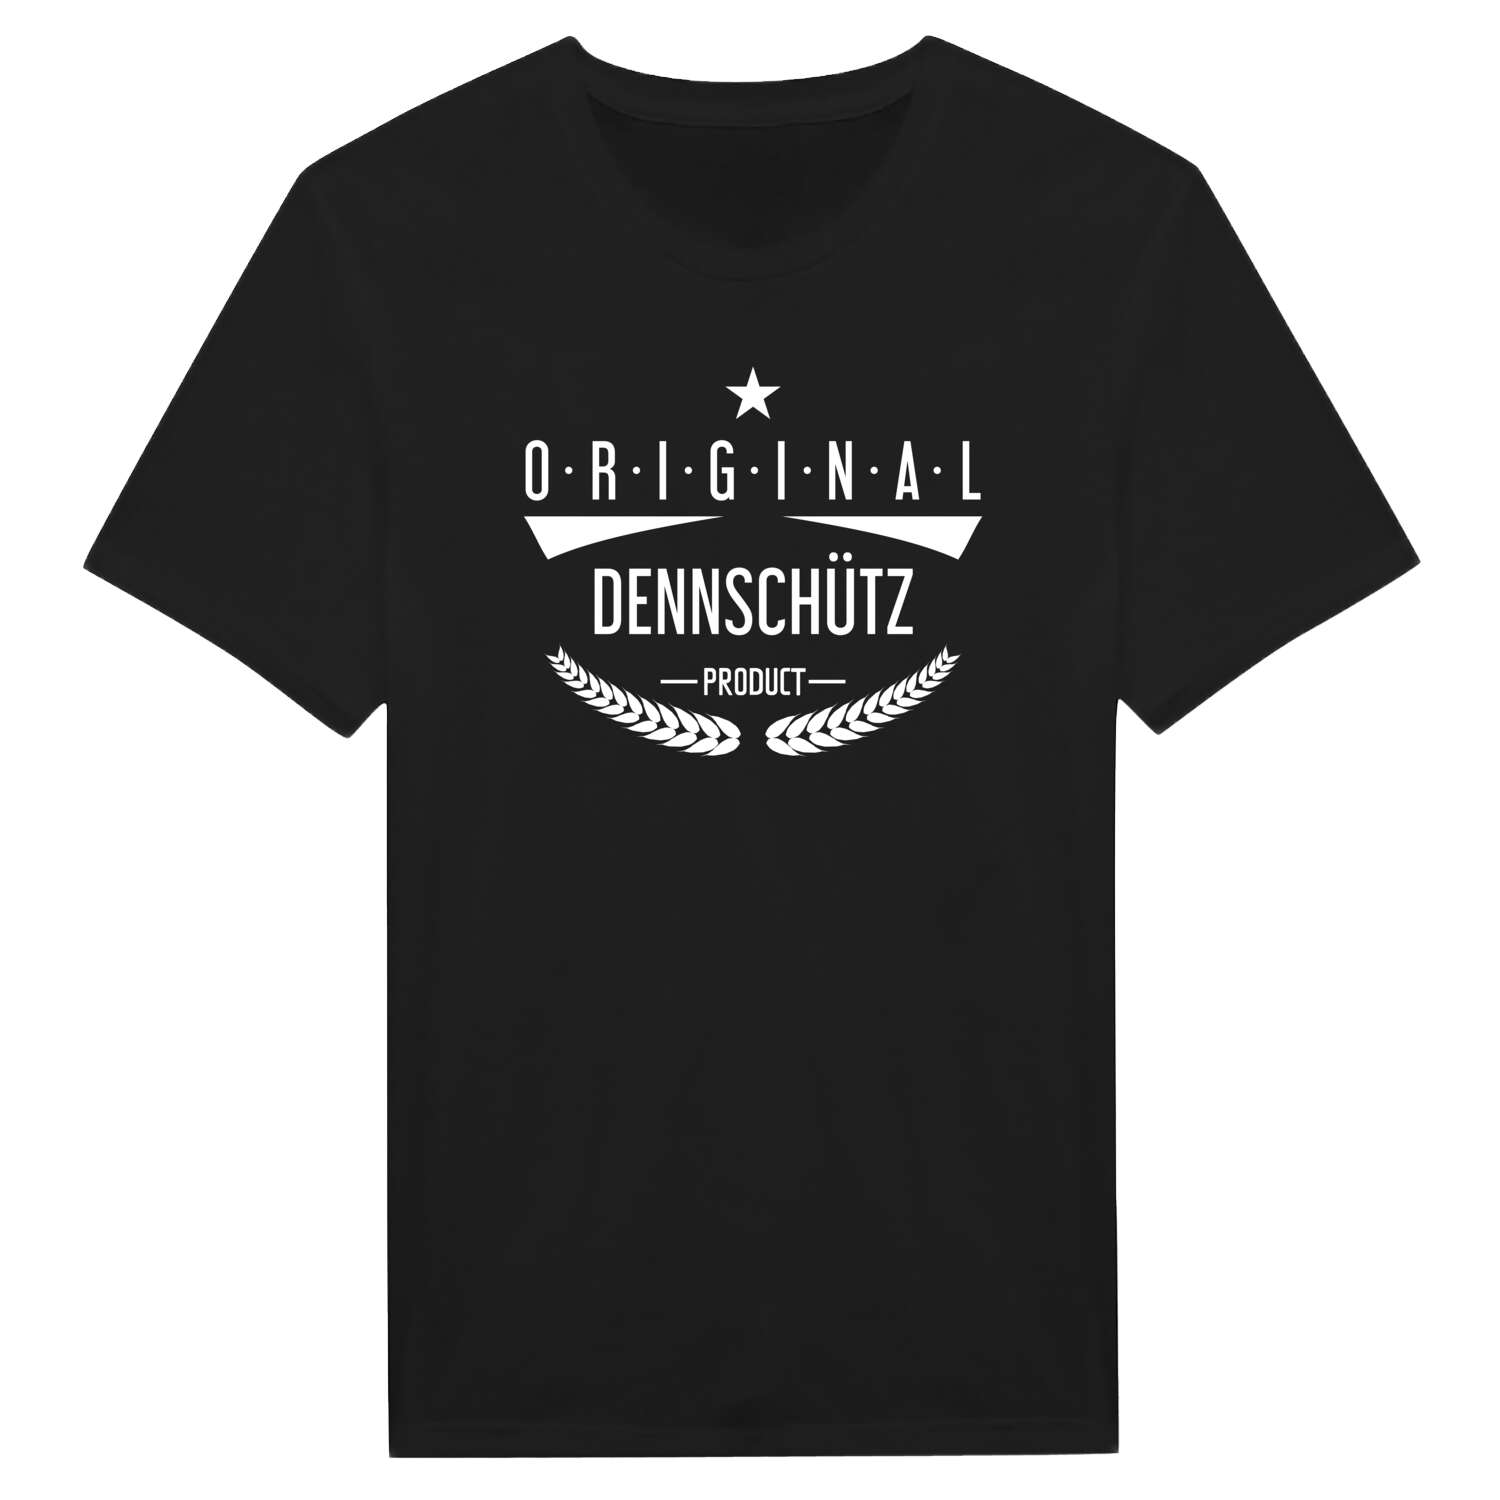 Dennschütz T-Shirt »Original Product«